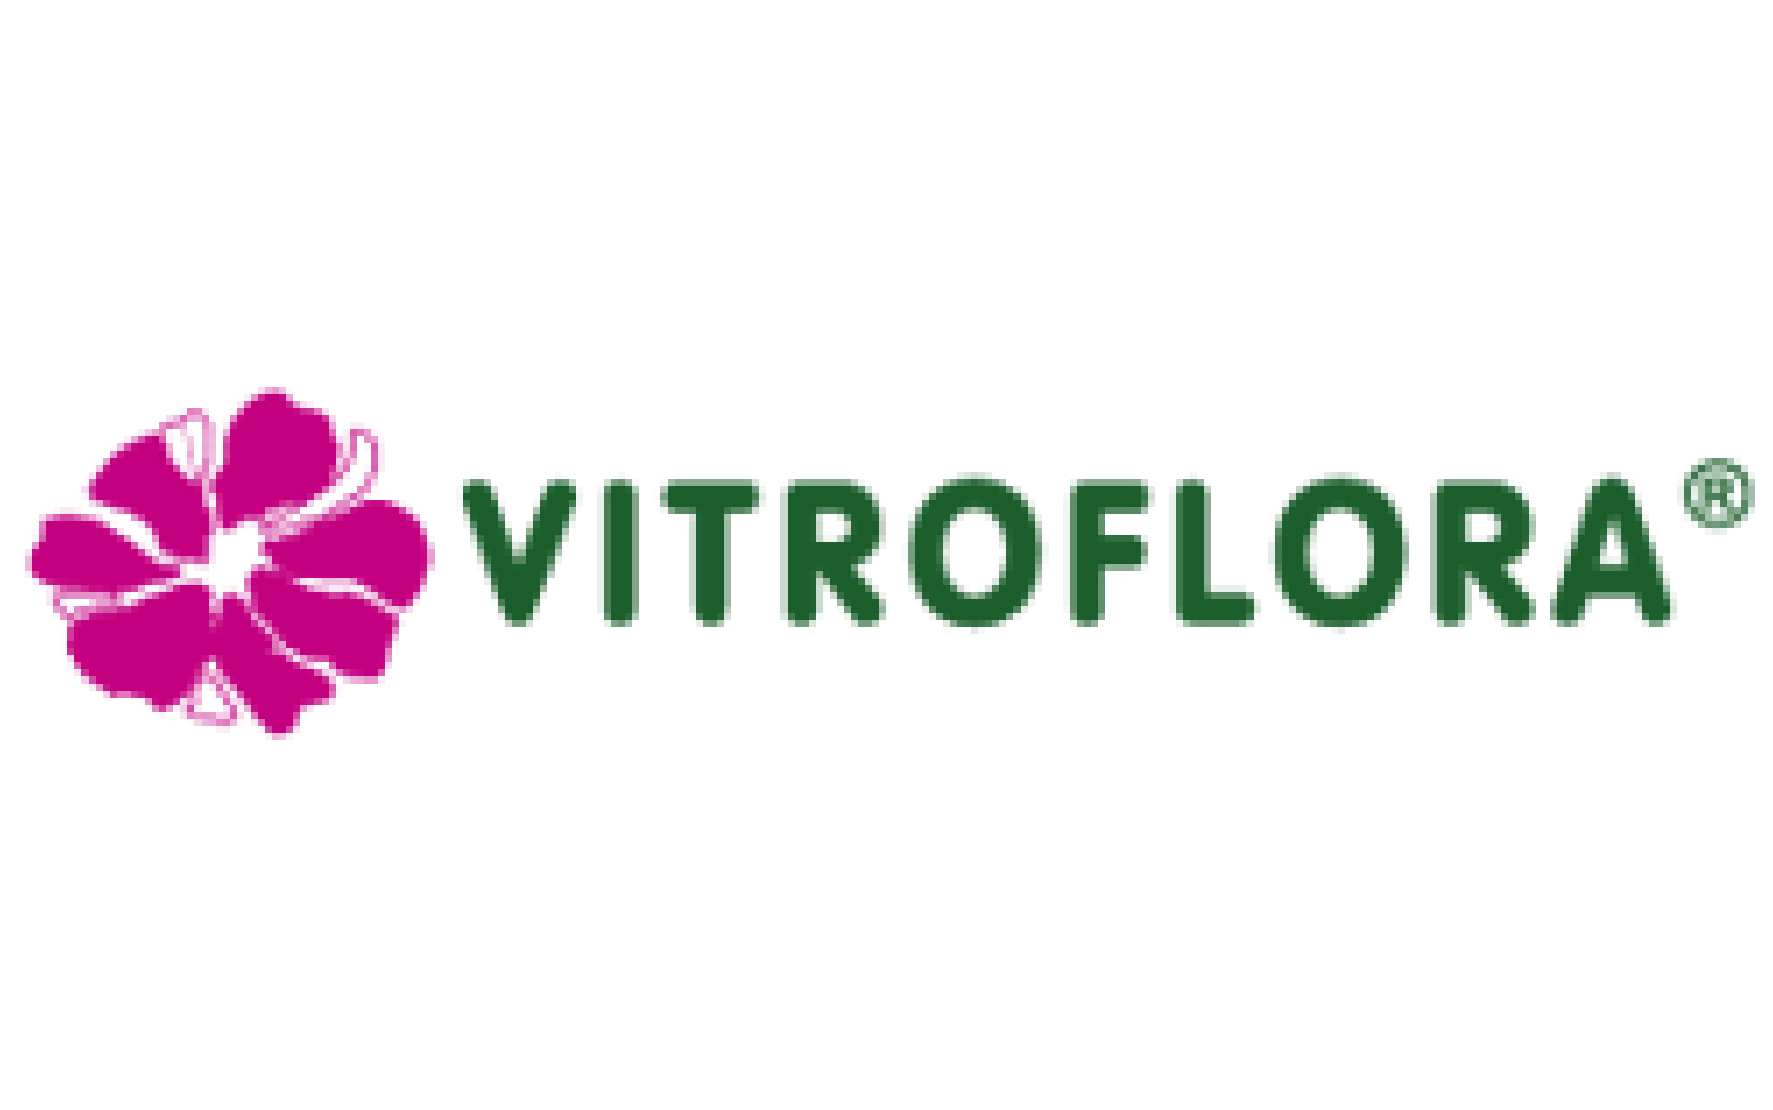 Vitroflora